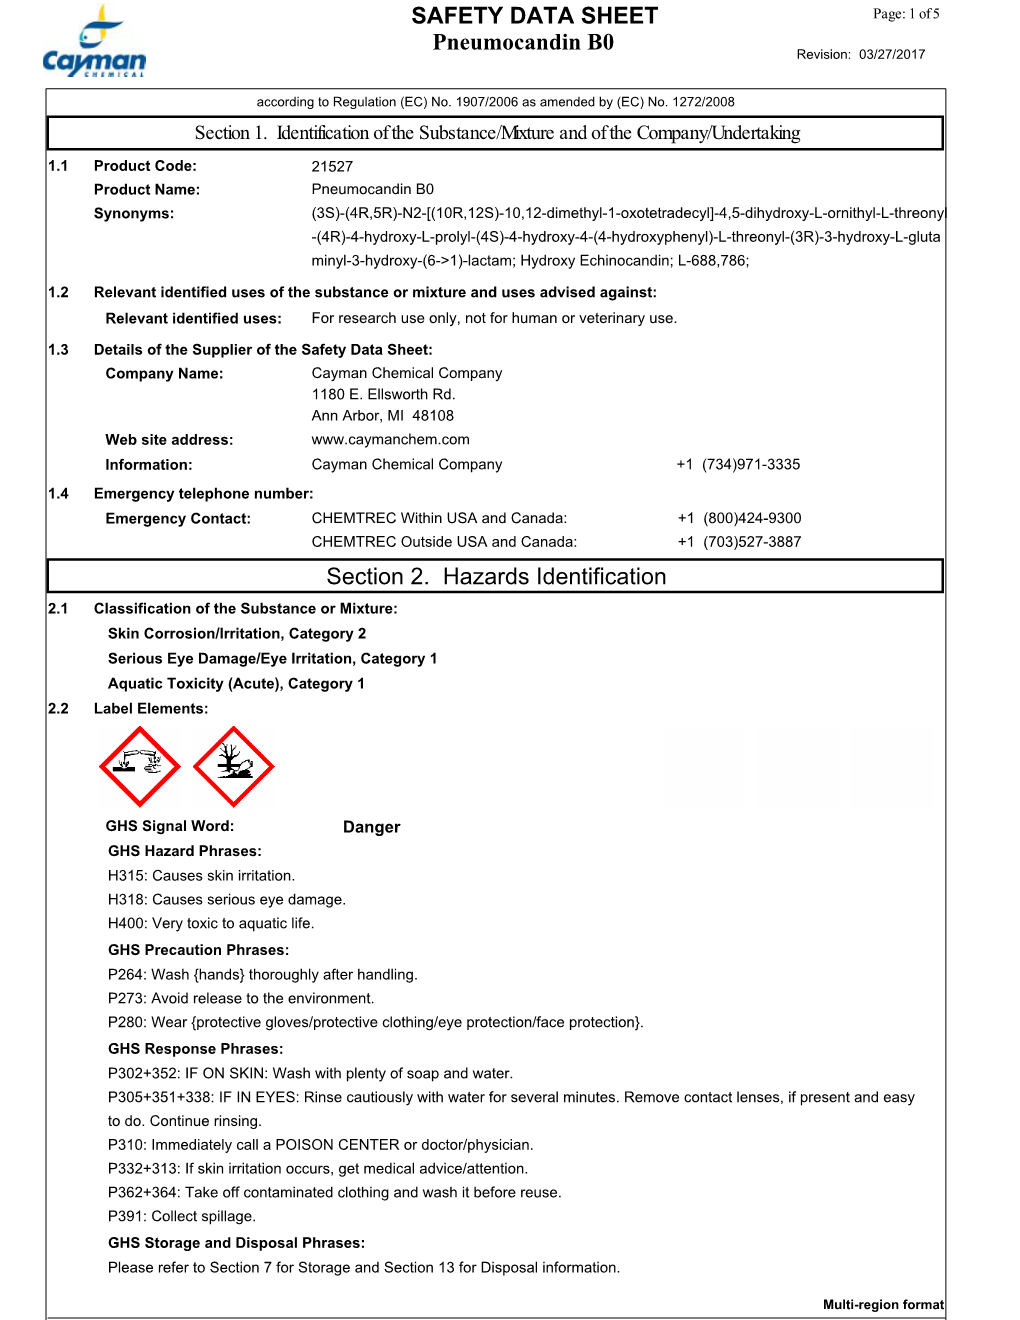 Pneumocandin B0 SAFETY DATA SHEET Section 2. Hazards